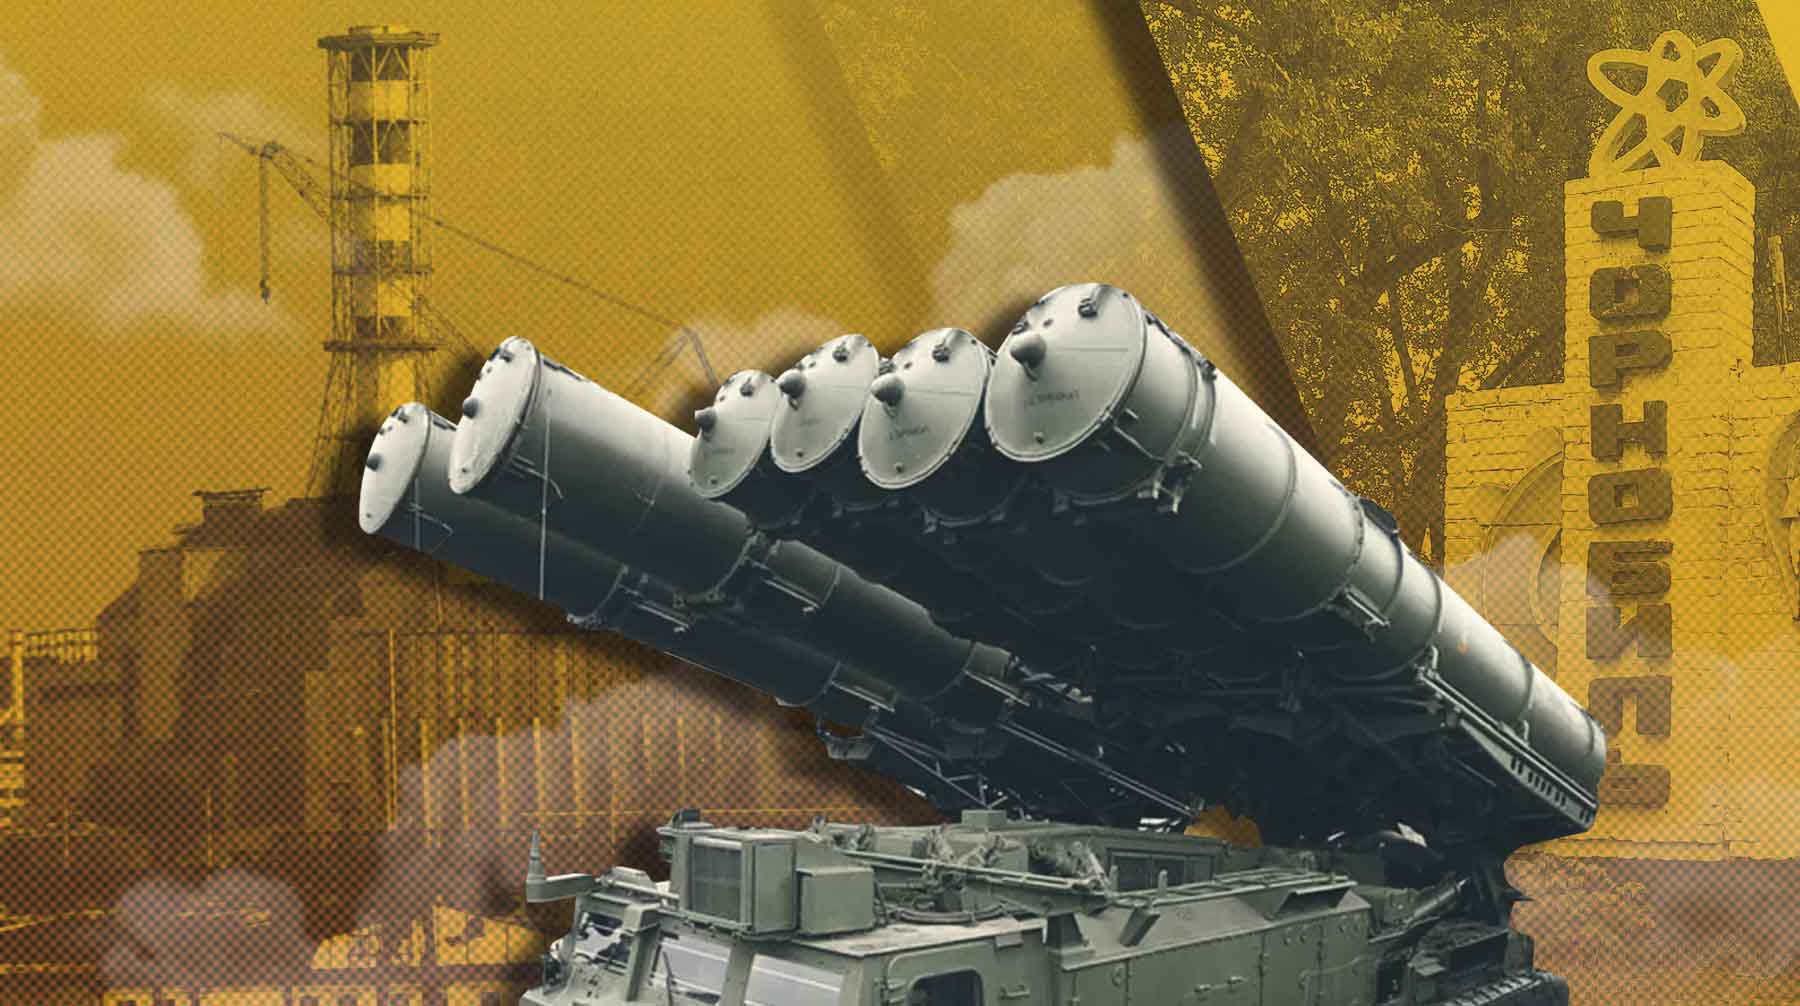 Dailystorm - Руководитель строительства саркофага на ЧАЭС: Российские системы ПВО должны быть начеку, чтобы под Запорожьем не повторился Чернобыль